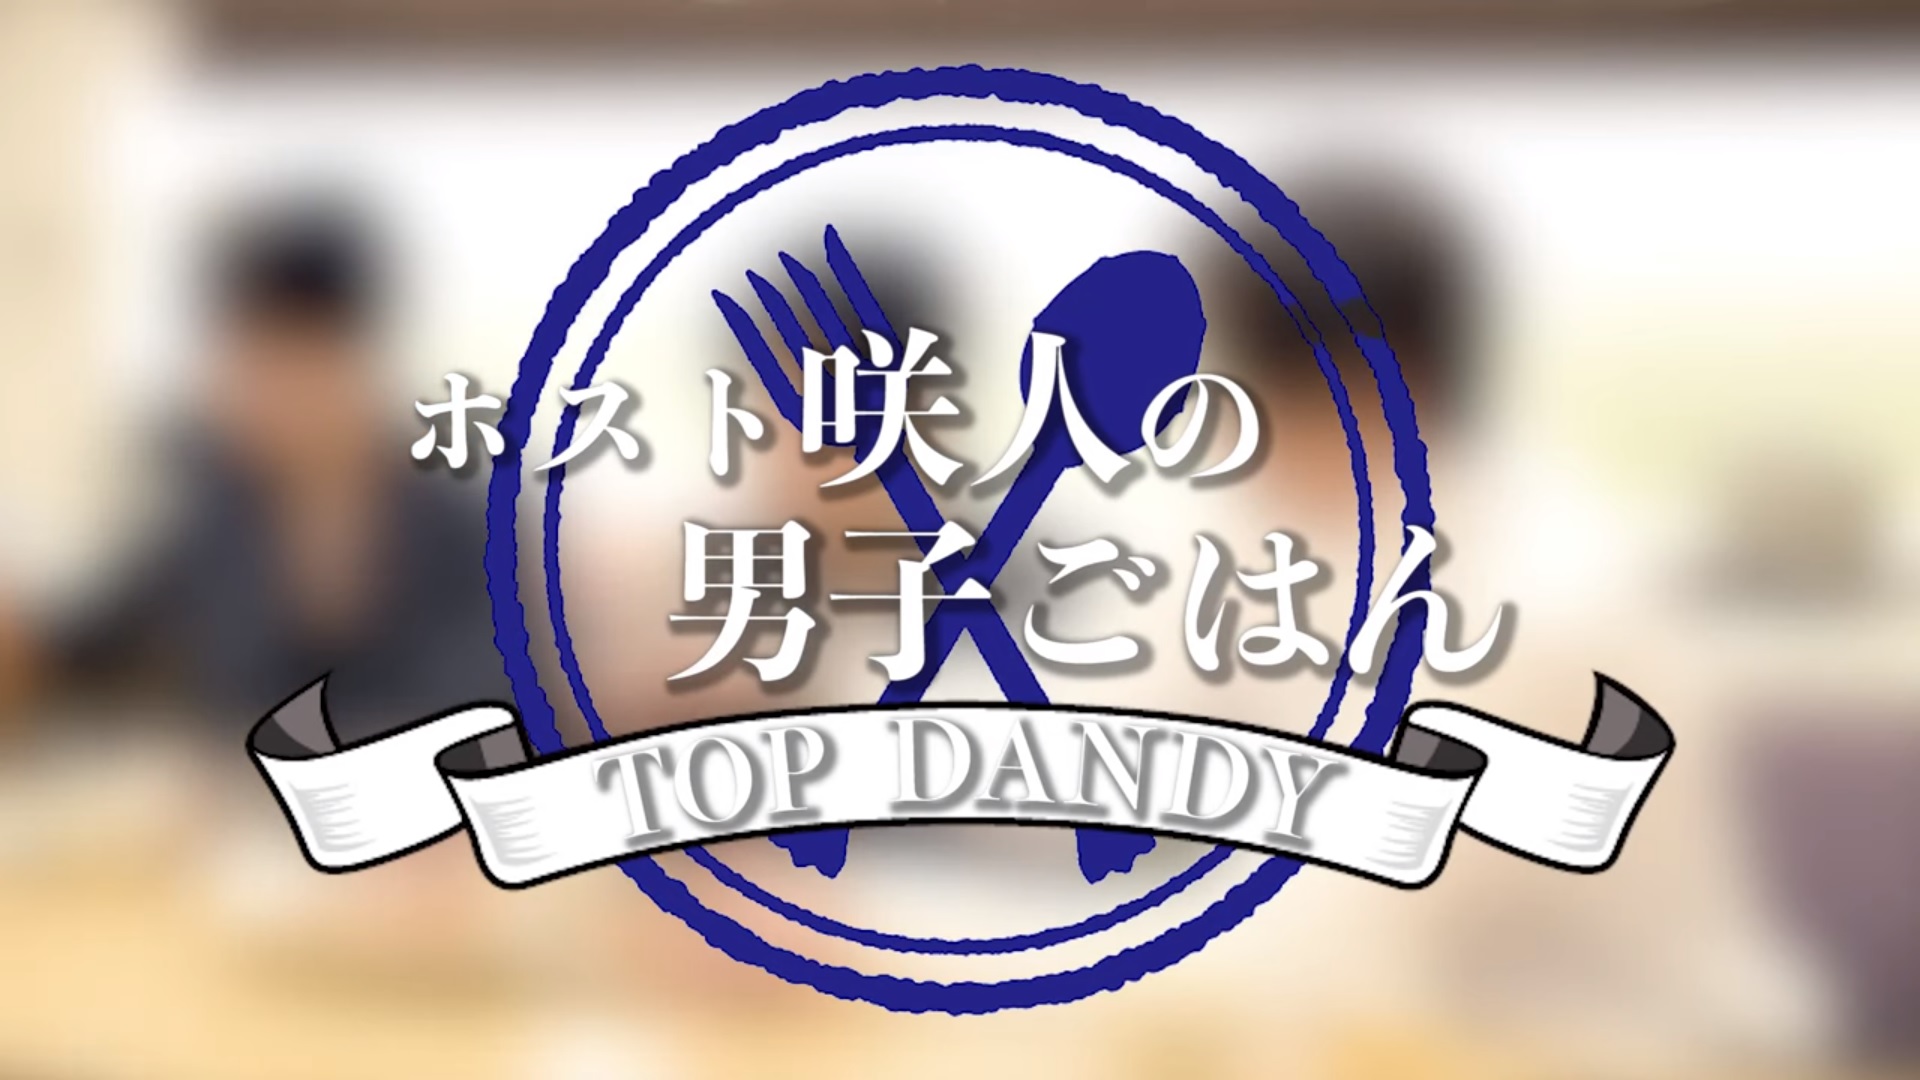 【TOP DANDY】指名本数No.1イケメンが作る、ホスト咲人の男子ごはん【group dandy】